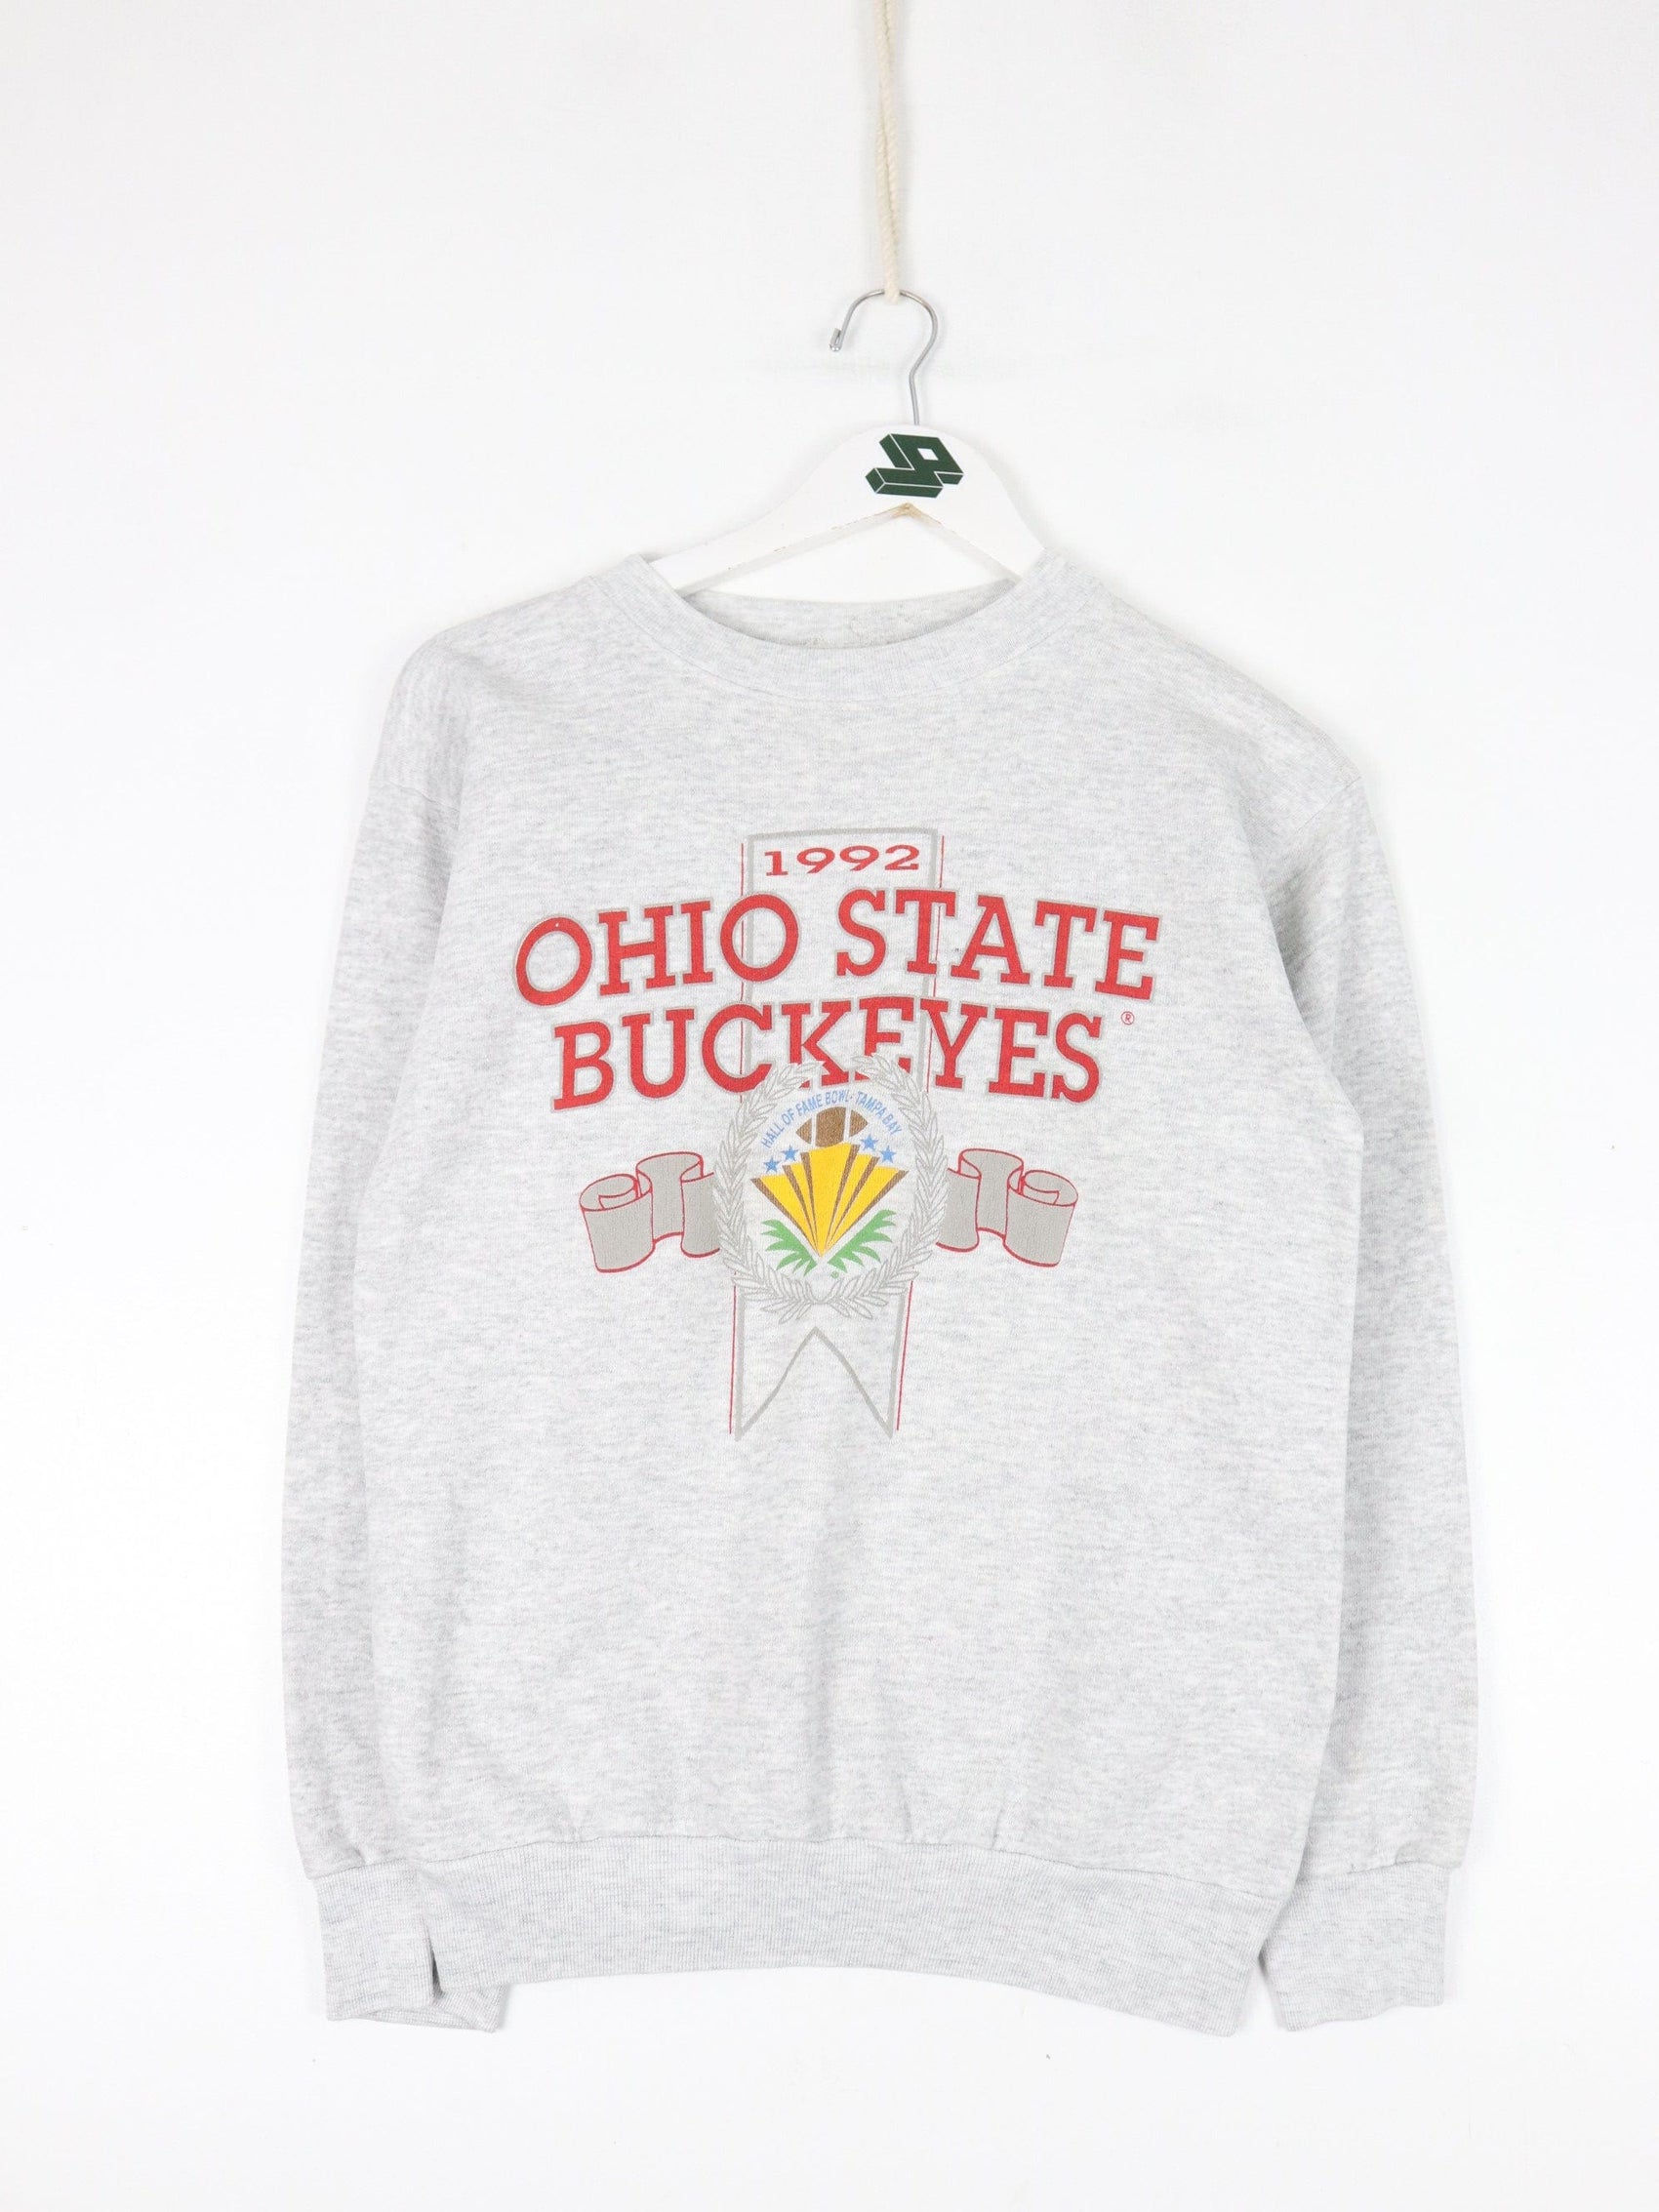 Collegiate Sweatshirts & Hoodies Vintage Ohio State Buckeyes Sweatshirt Fits Mens XS/S Grey College